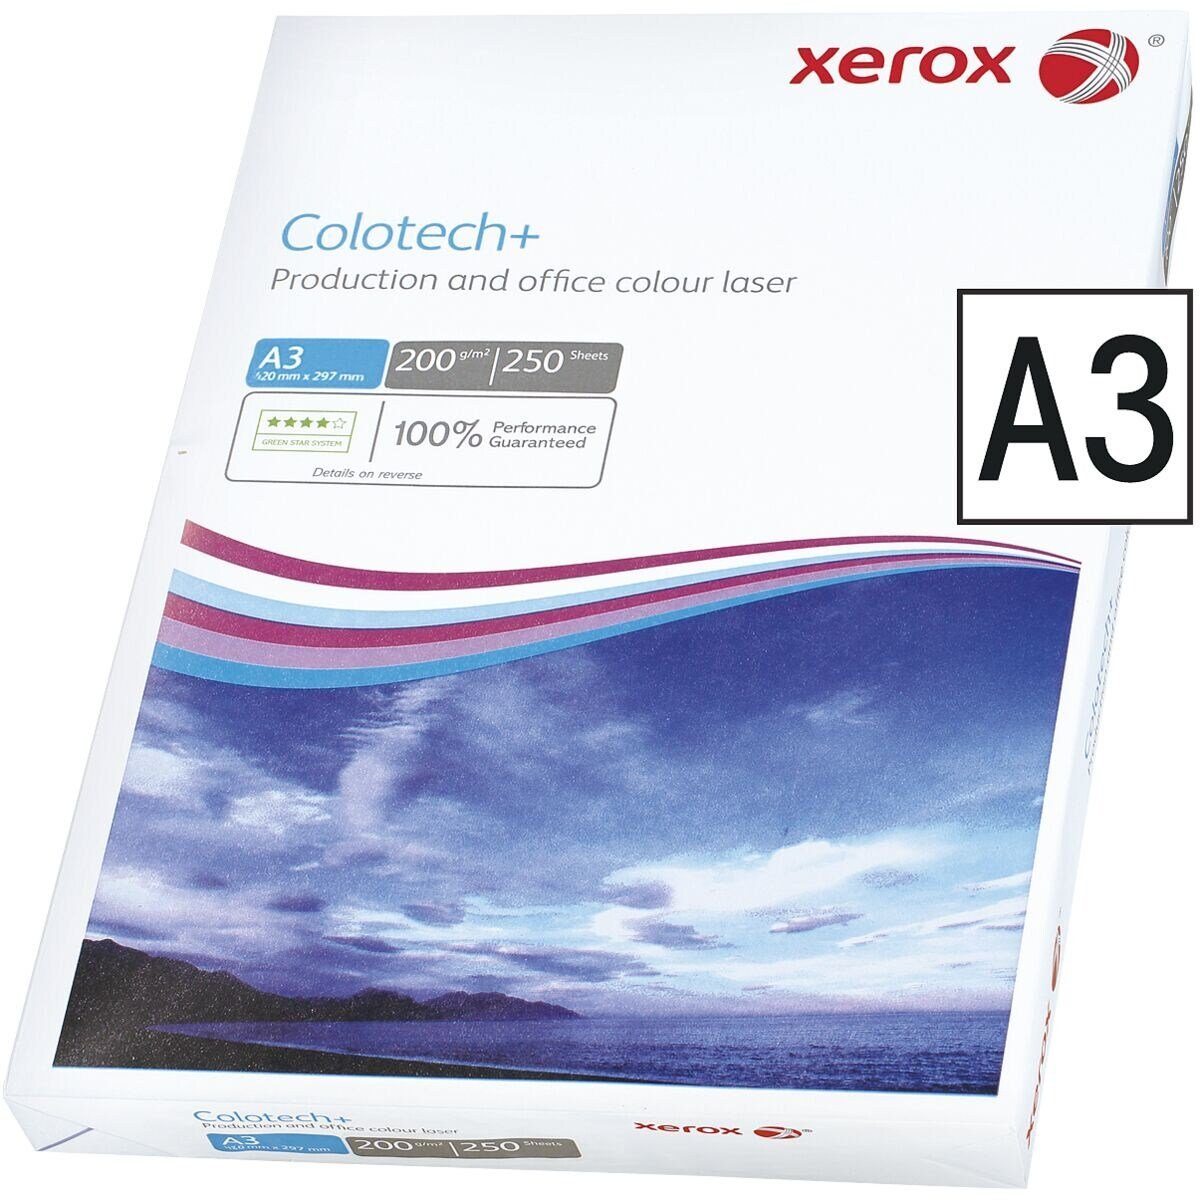 Xerox Farblaser-Druckerpapier Colotech+, Format DIN A3, 200 g/m², 250 Blatt